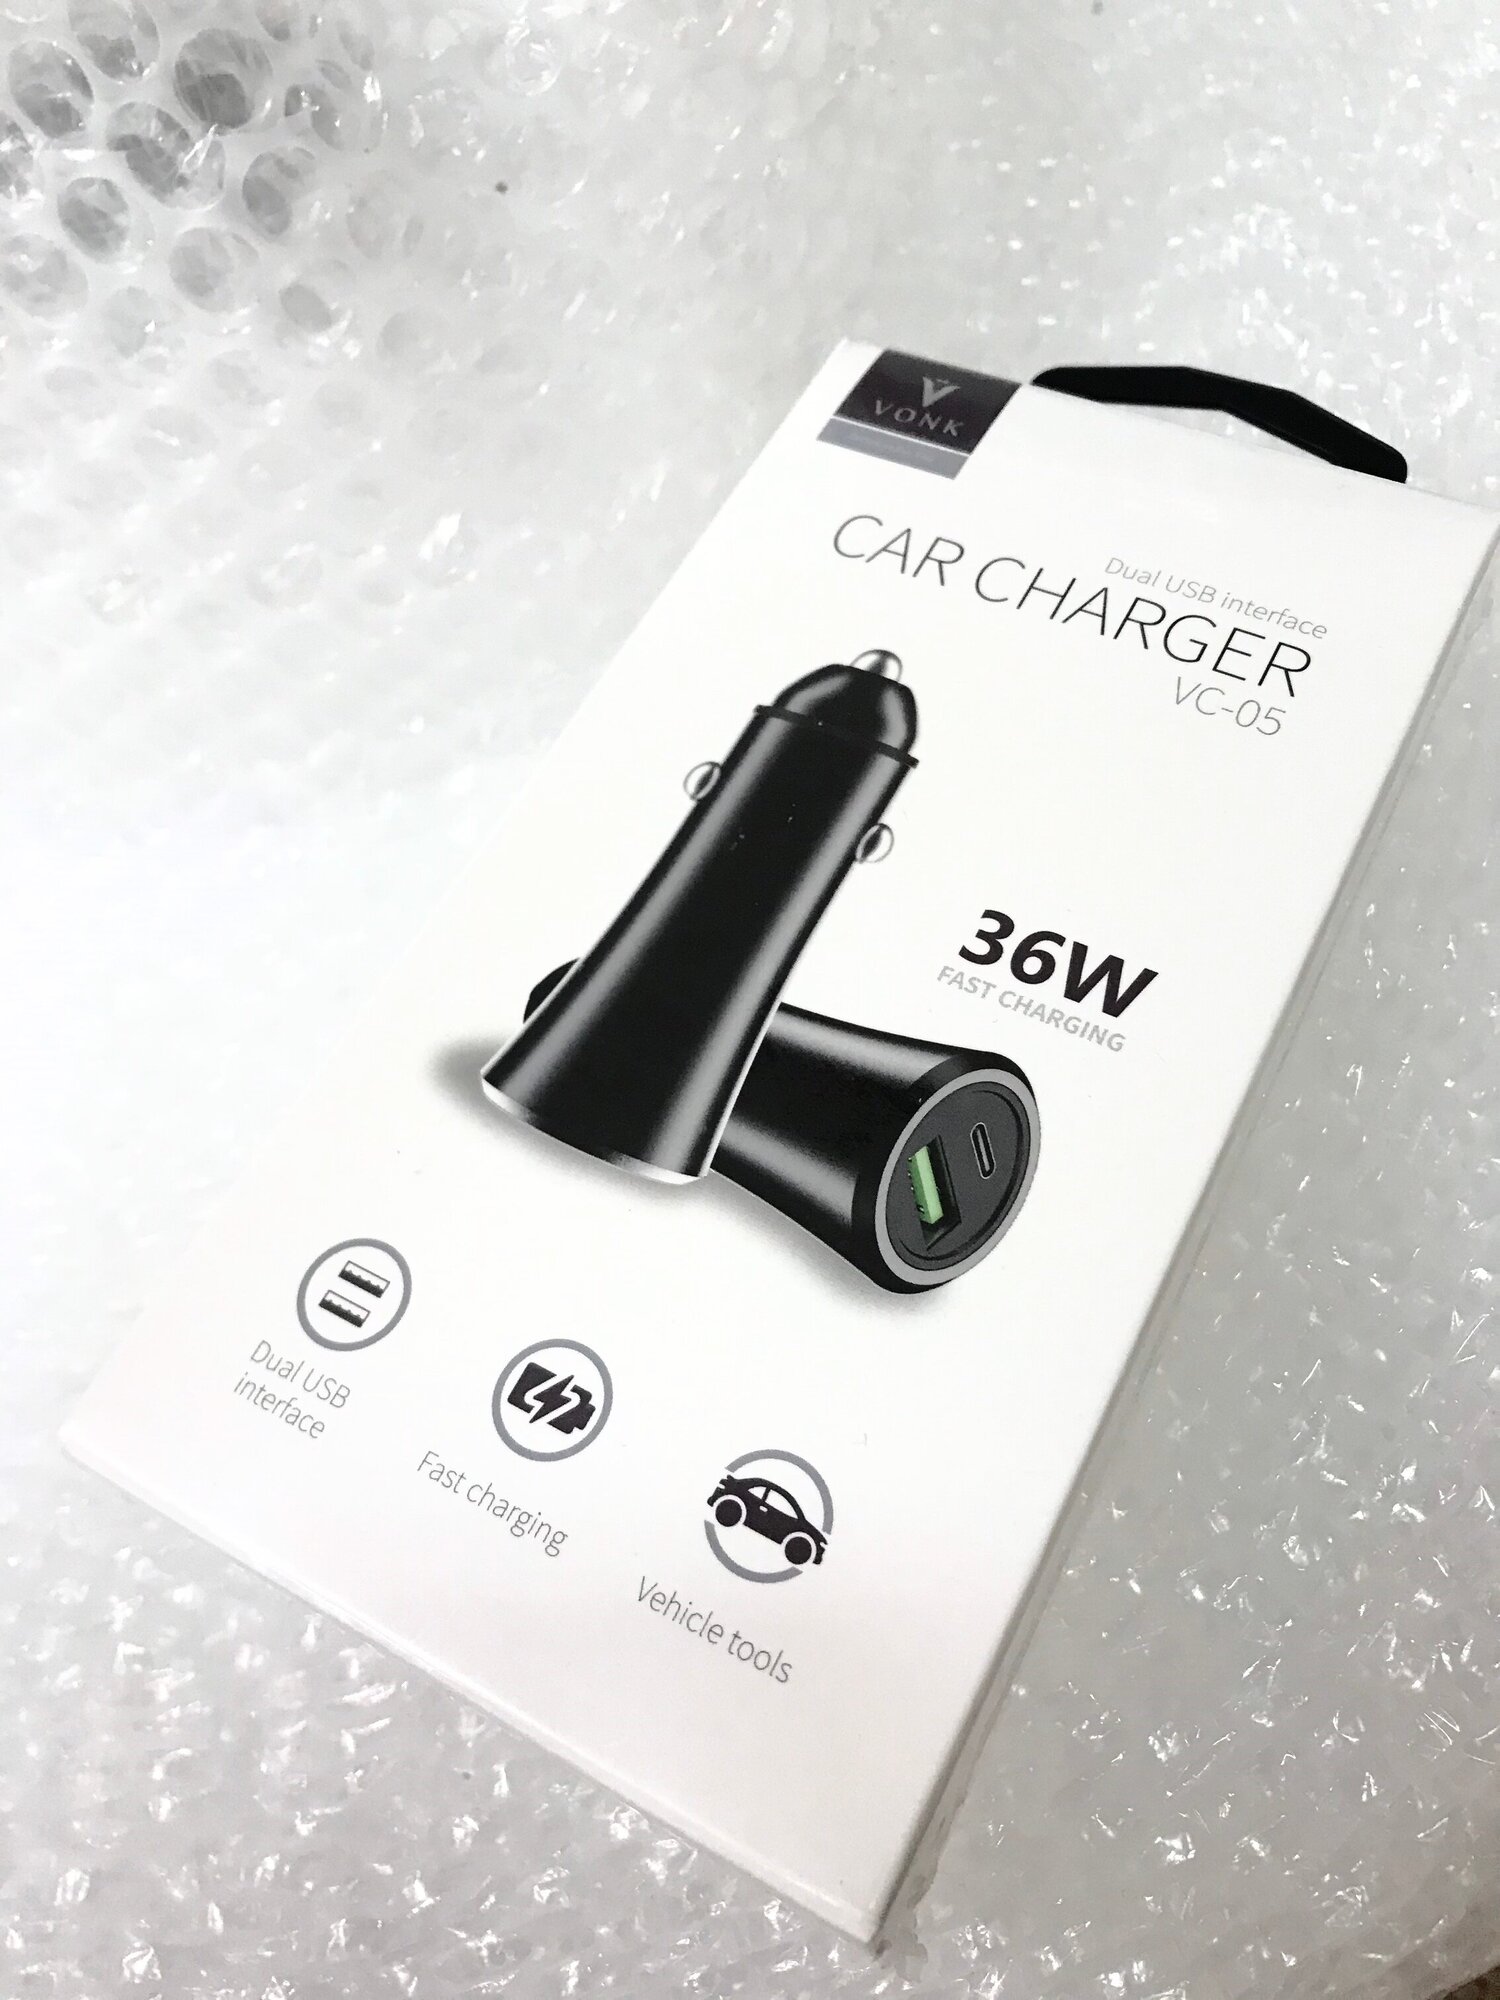 Автомобильное зарядное устройство Car Charger 36W серебристый.